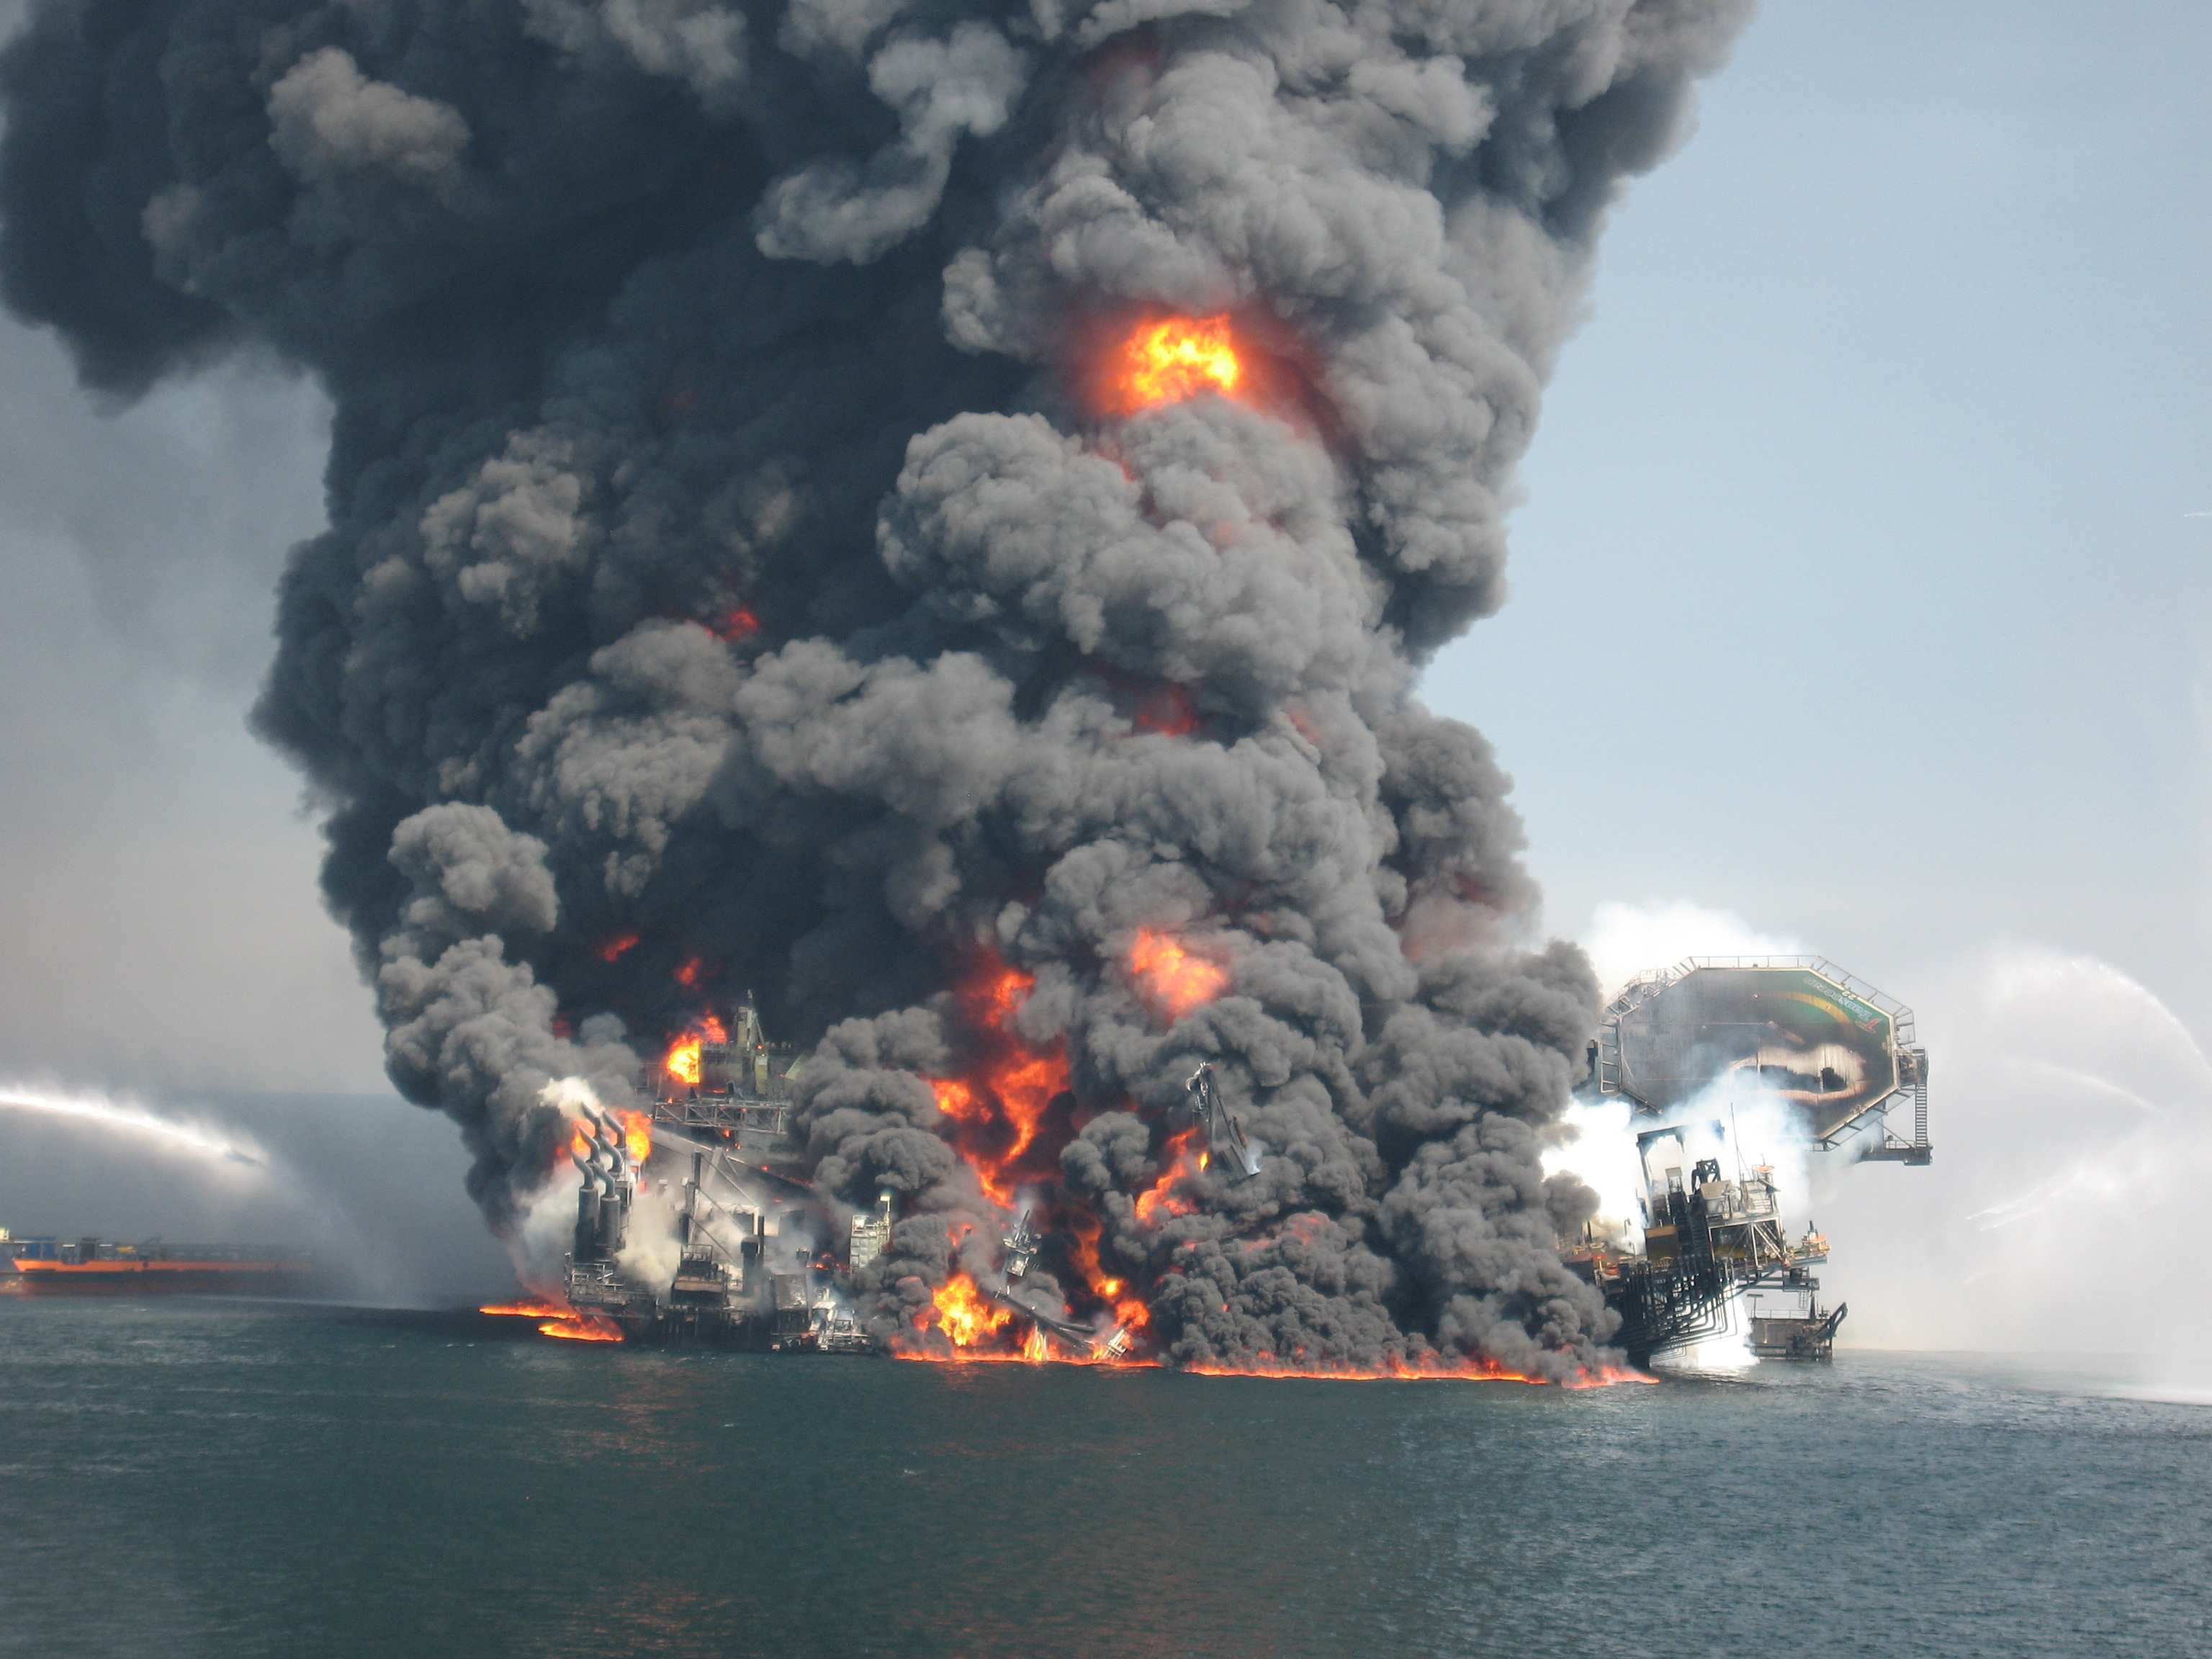 Взрыв на поверхности воды. Взрыв нефтяной платформы Deepwater Horizon. Взрыв нефтяной платформы Deepwater Horizon - 20 апреля 2010 года. Взрыв платформы Deepwater Horizon в мексиканском заливе. Авария на платформе Deepwater Horizon 20 апреля 2010 года.